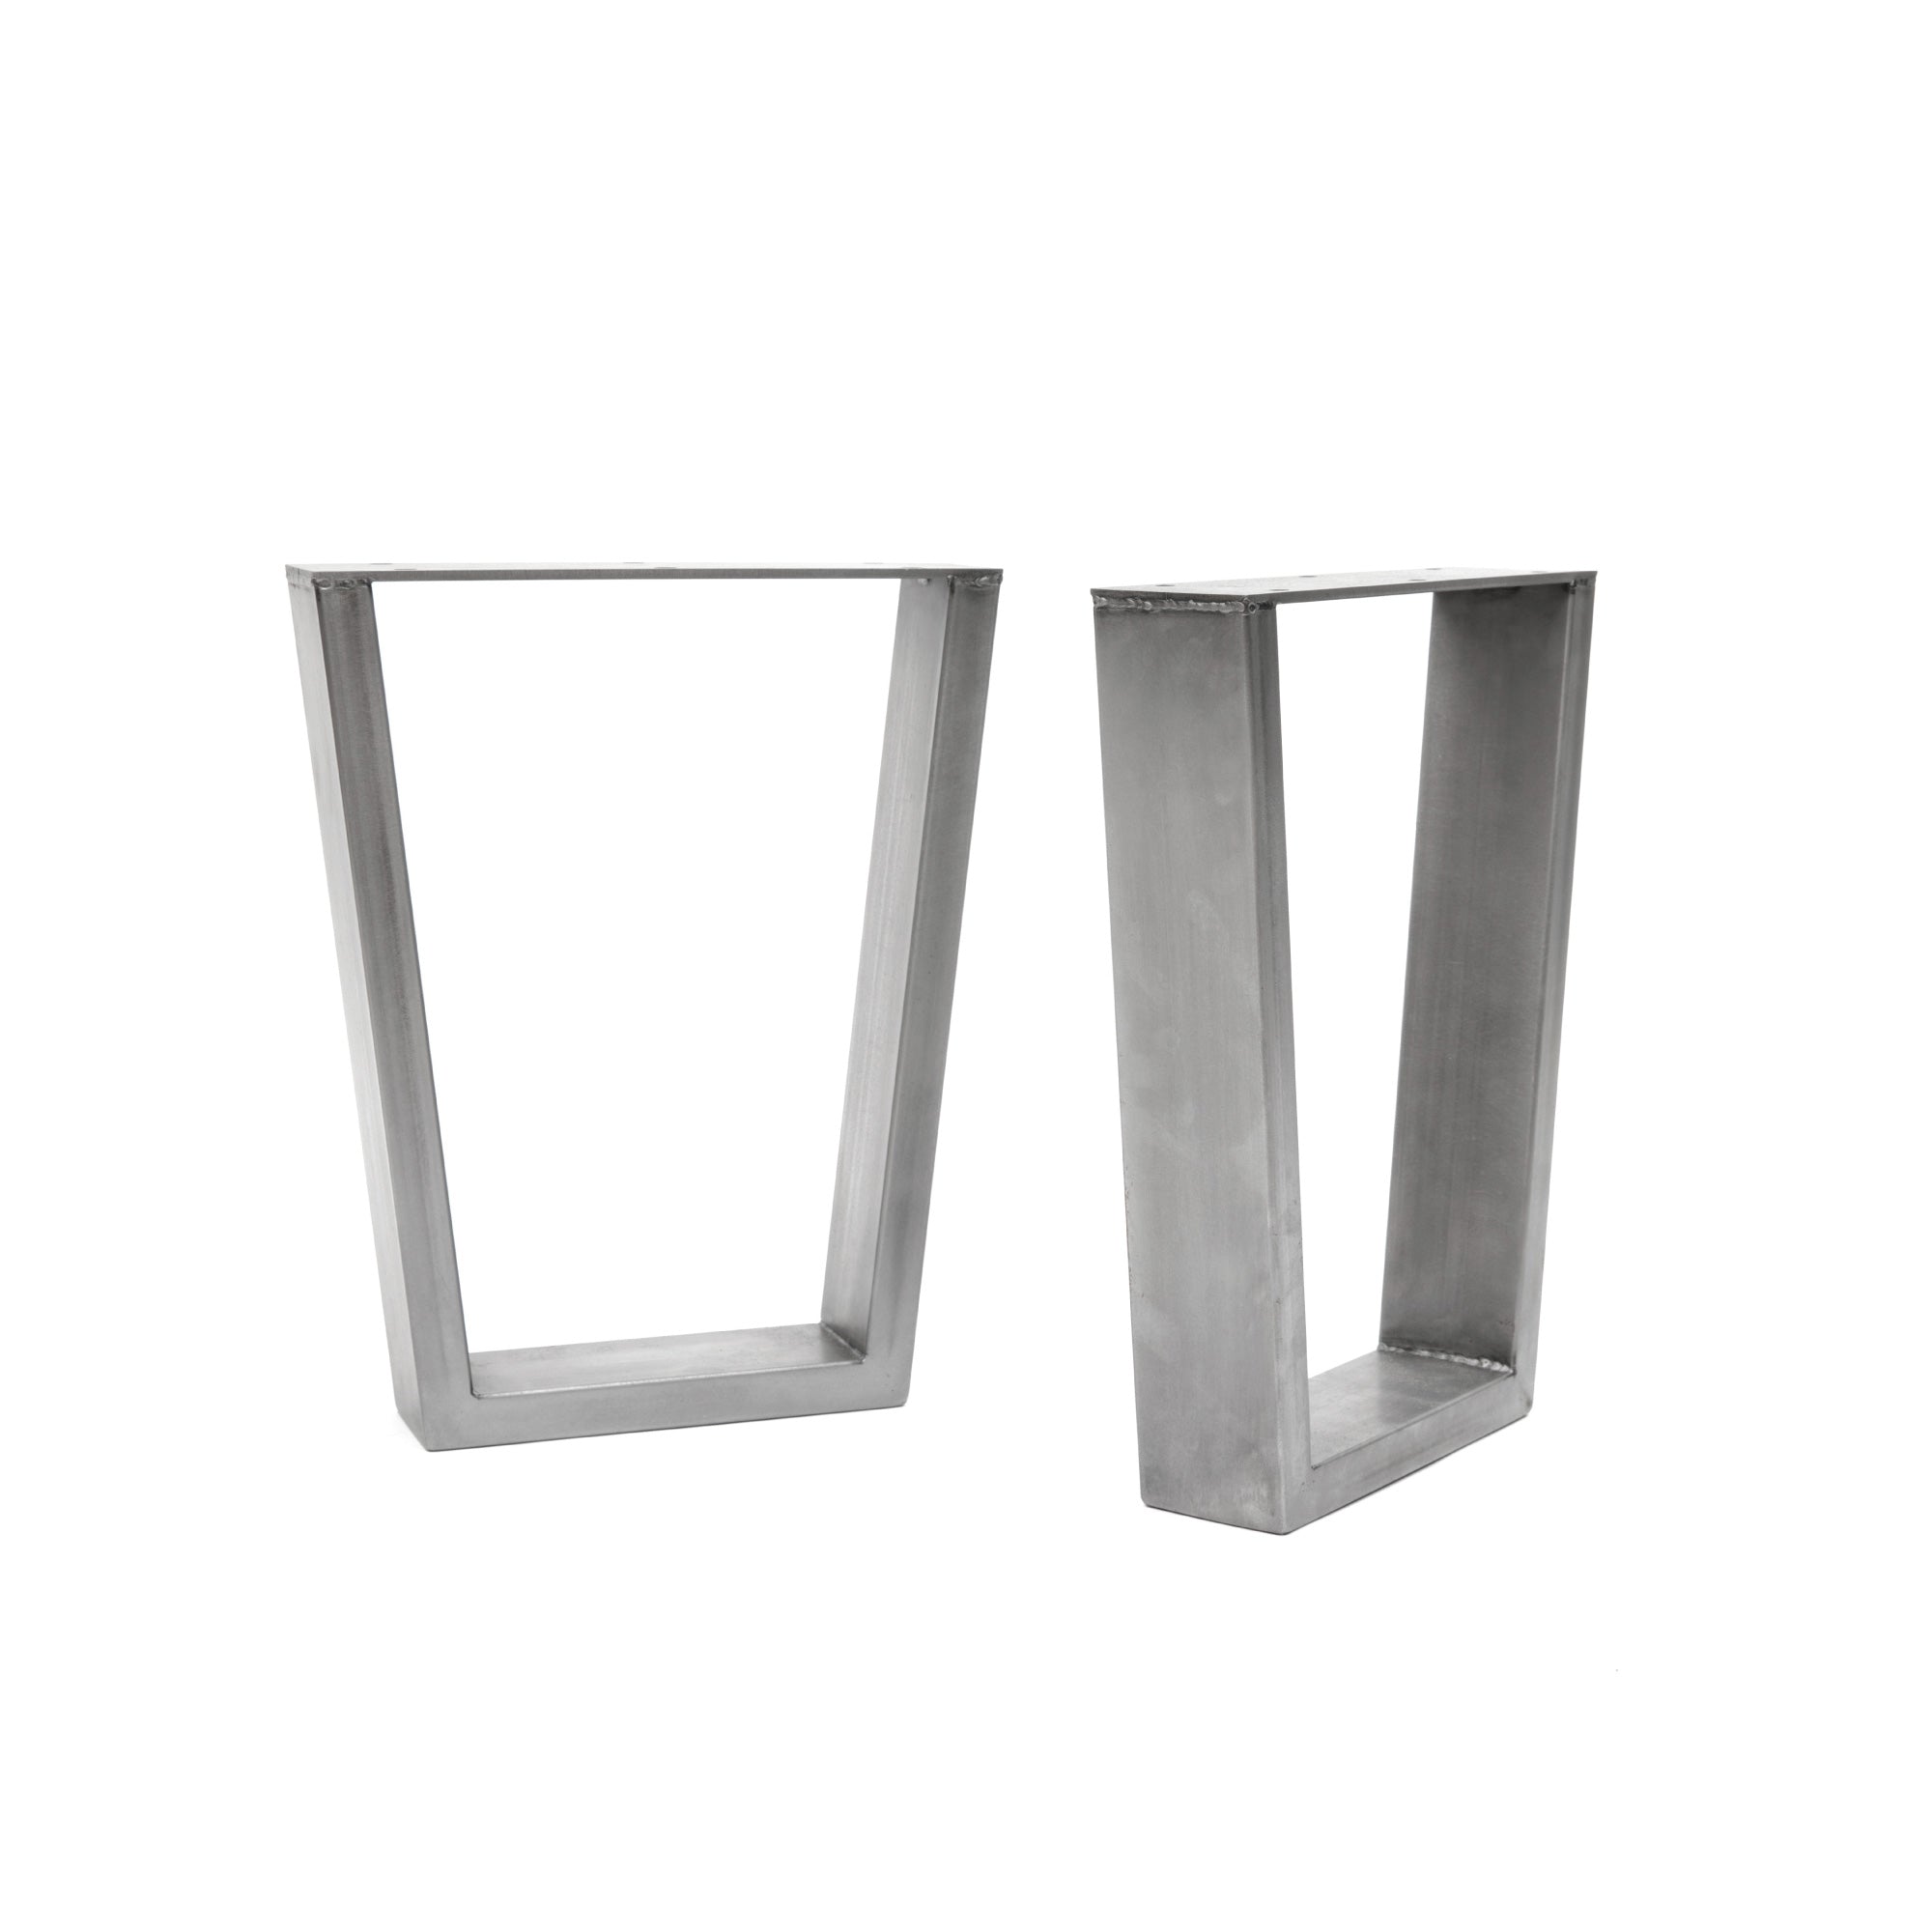 V-Frame Industrial legs | 40cm Bench